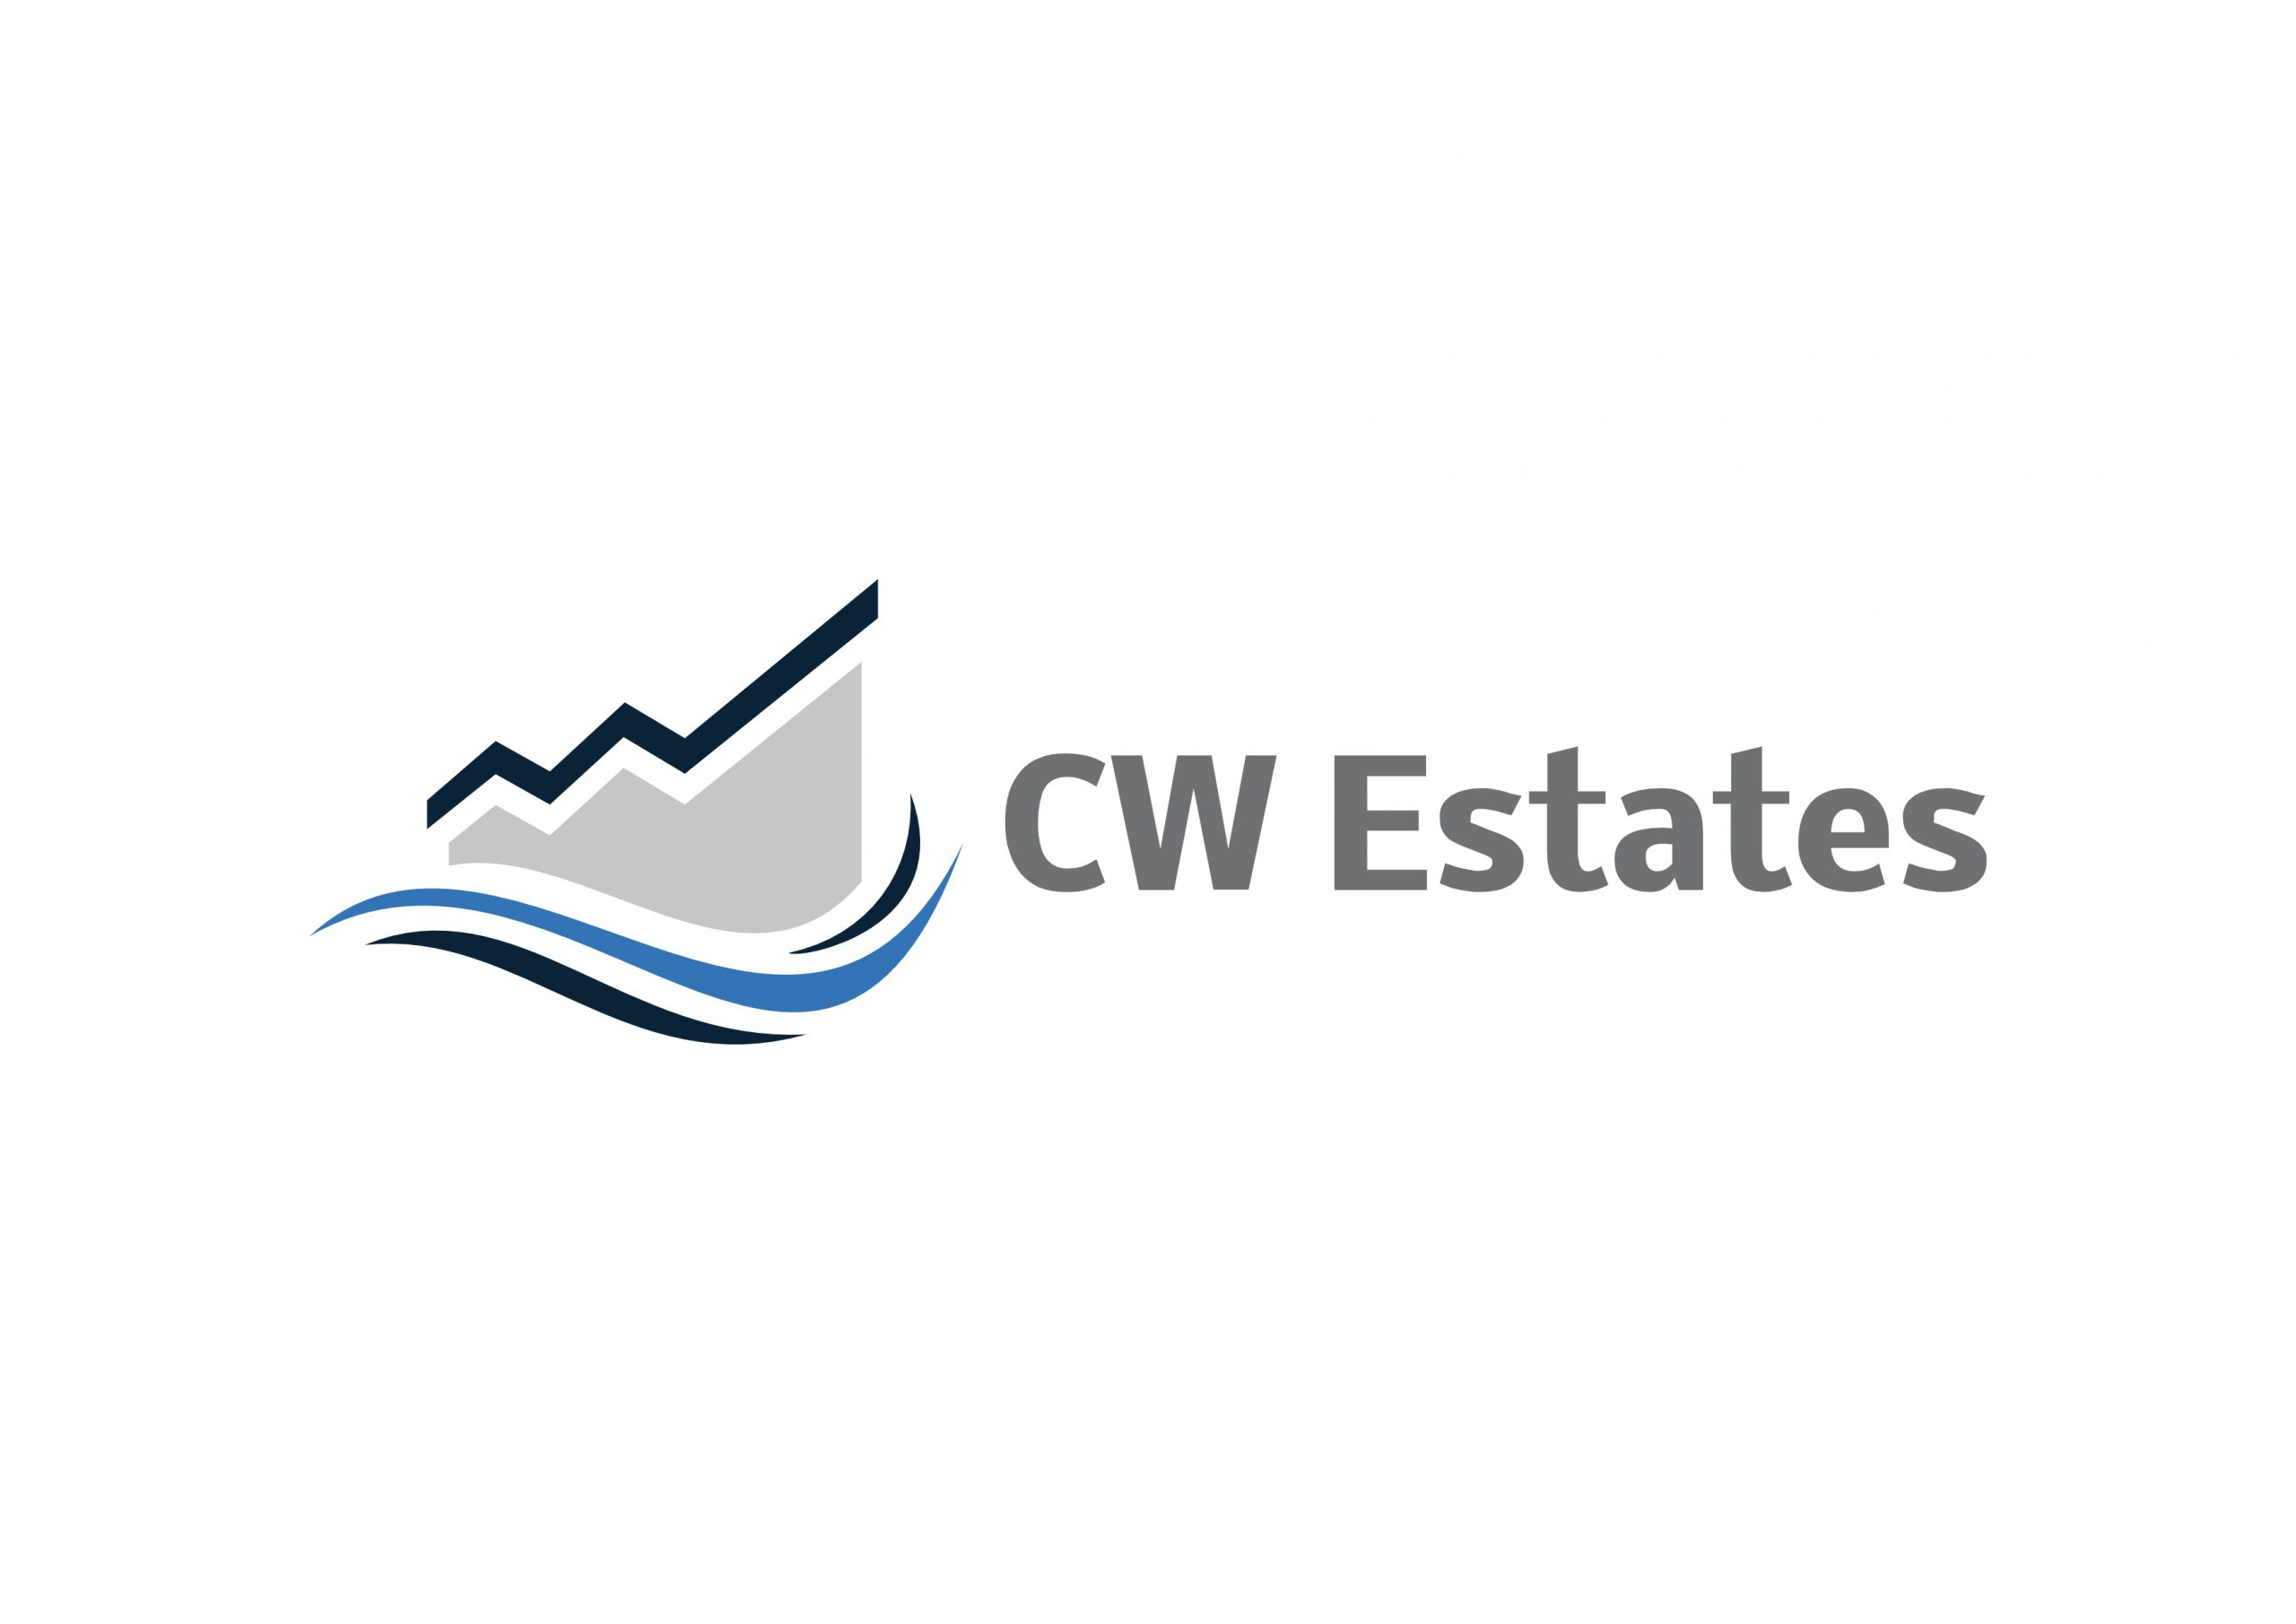 CW Estates